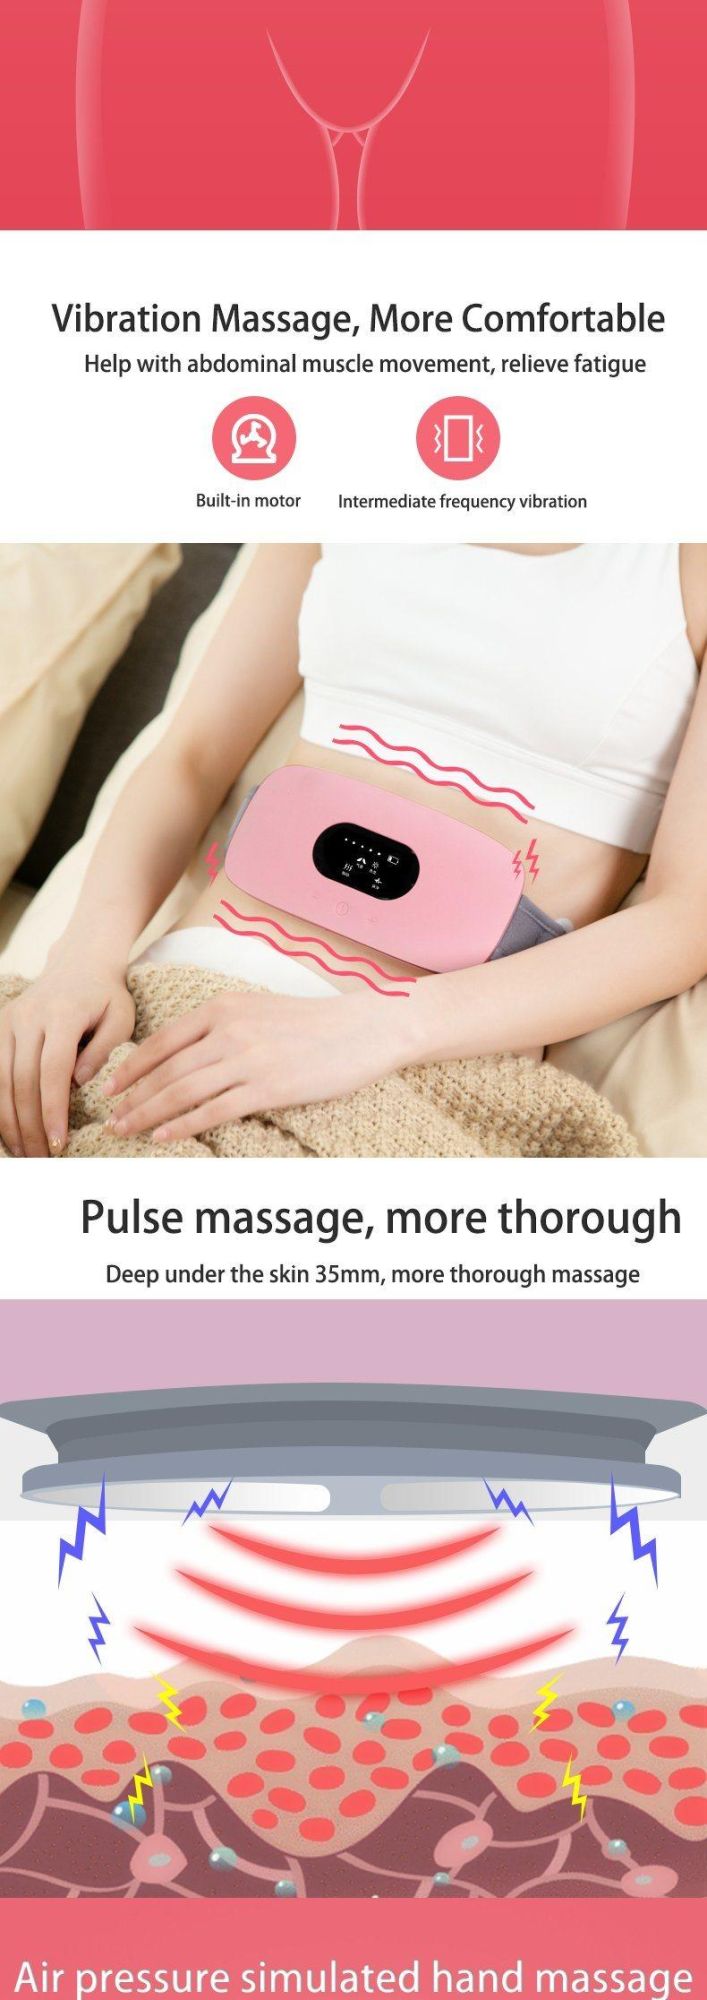 Hezheng Gift Relieve Menstrual Pain in Women High Quality Warm Waist Warm Belly Belt Massager